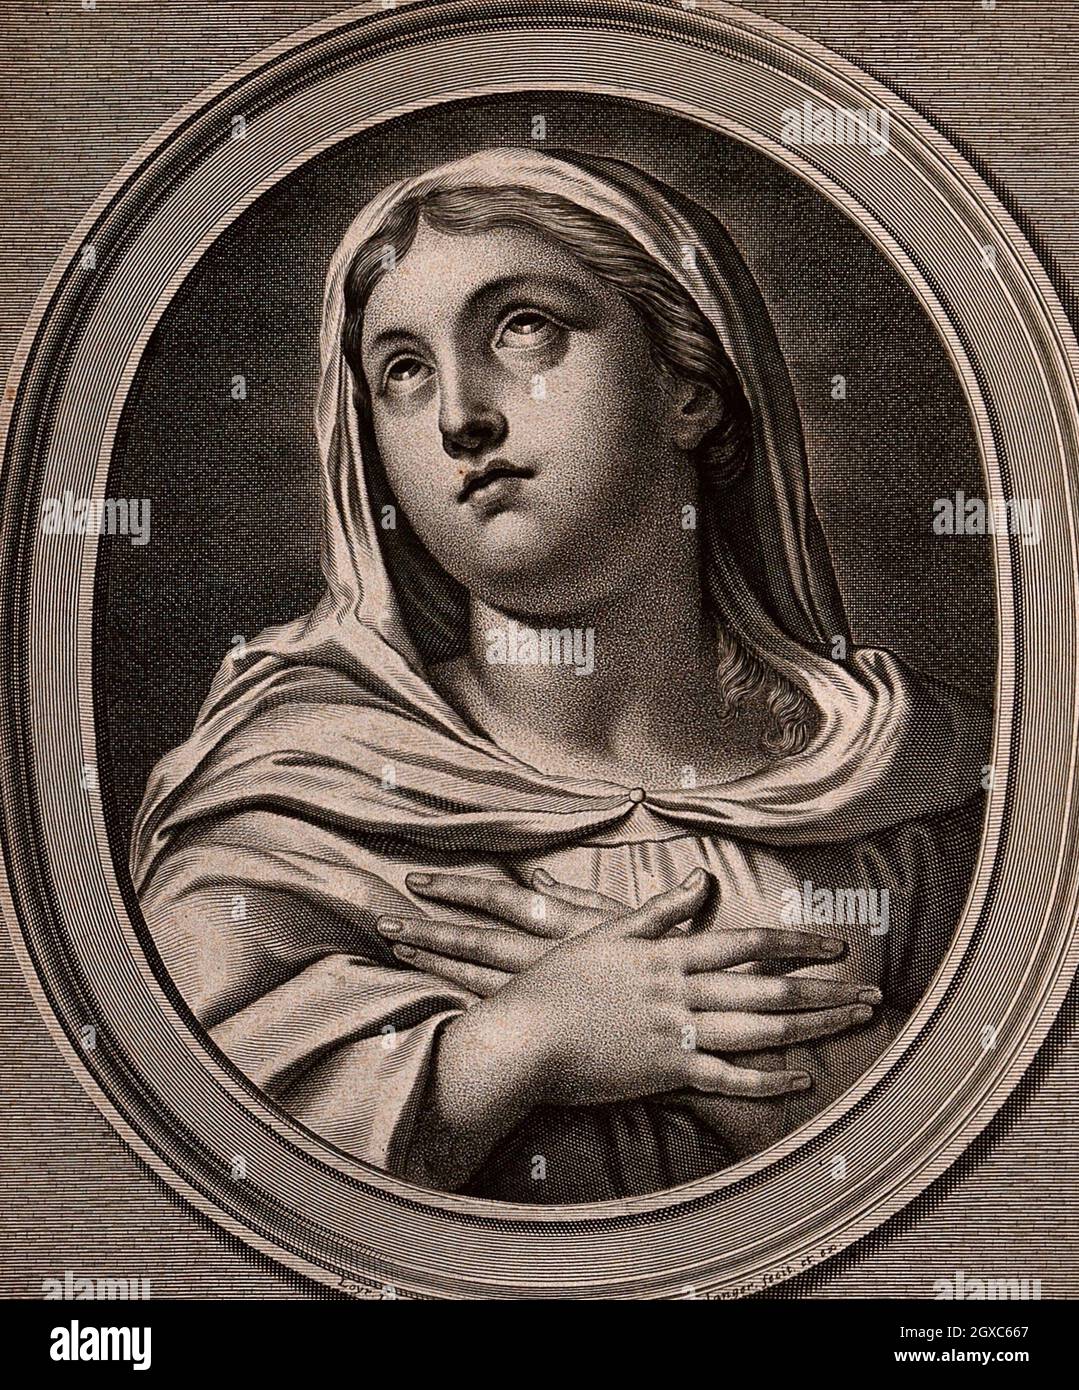 Heilige Maria (die selige Jungfrau). Stich von J. Boulanger nach N.P. Loyr. - Mitwirkende Loir, Nicolas Pierre, 1624-1679. Boulanger, Jean, 1608-ca. Stockfoto